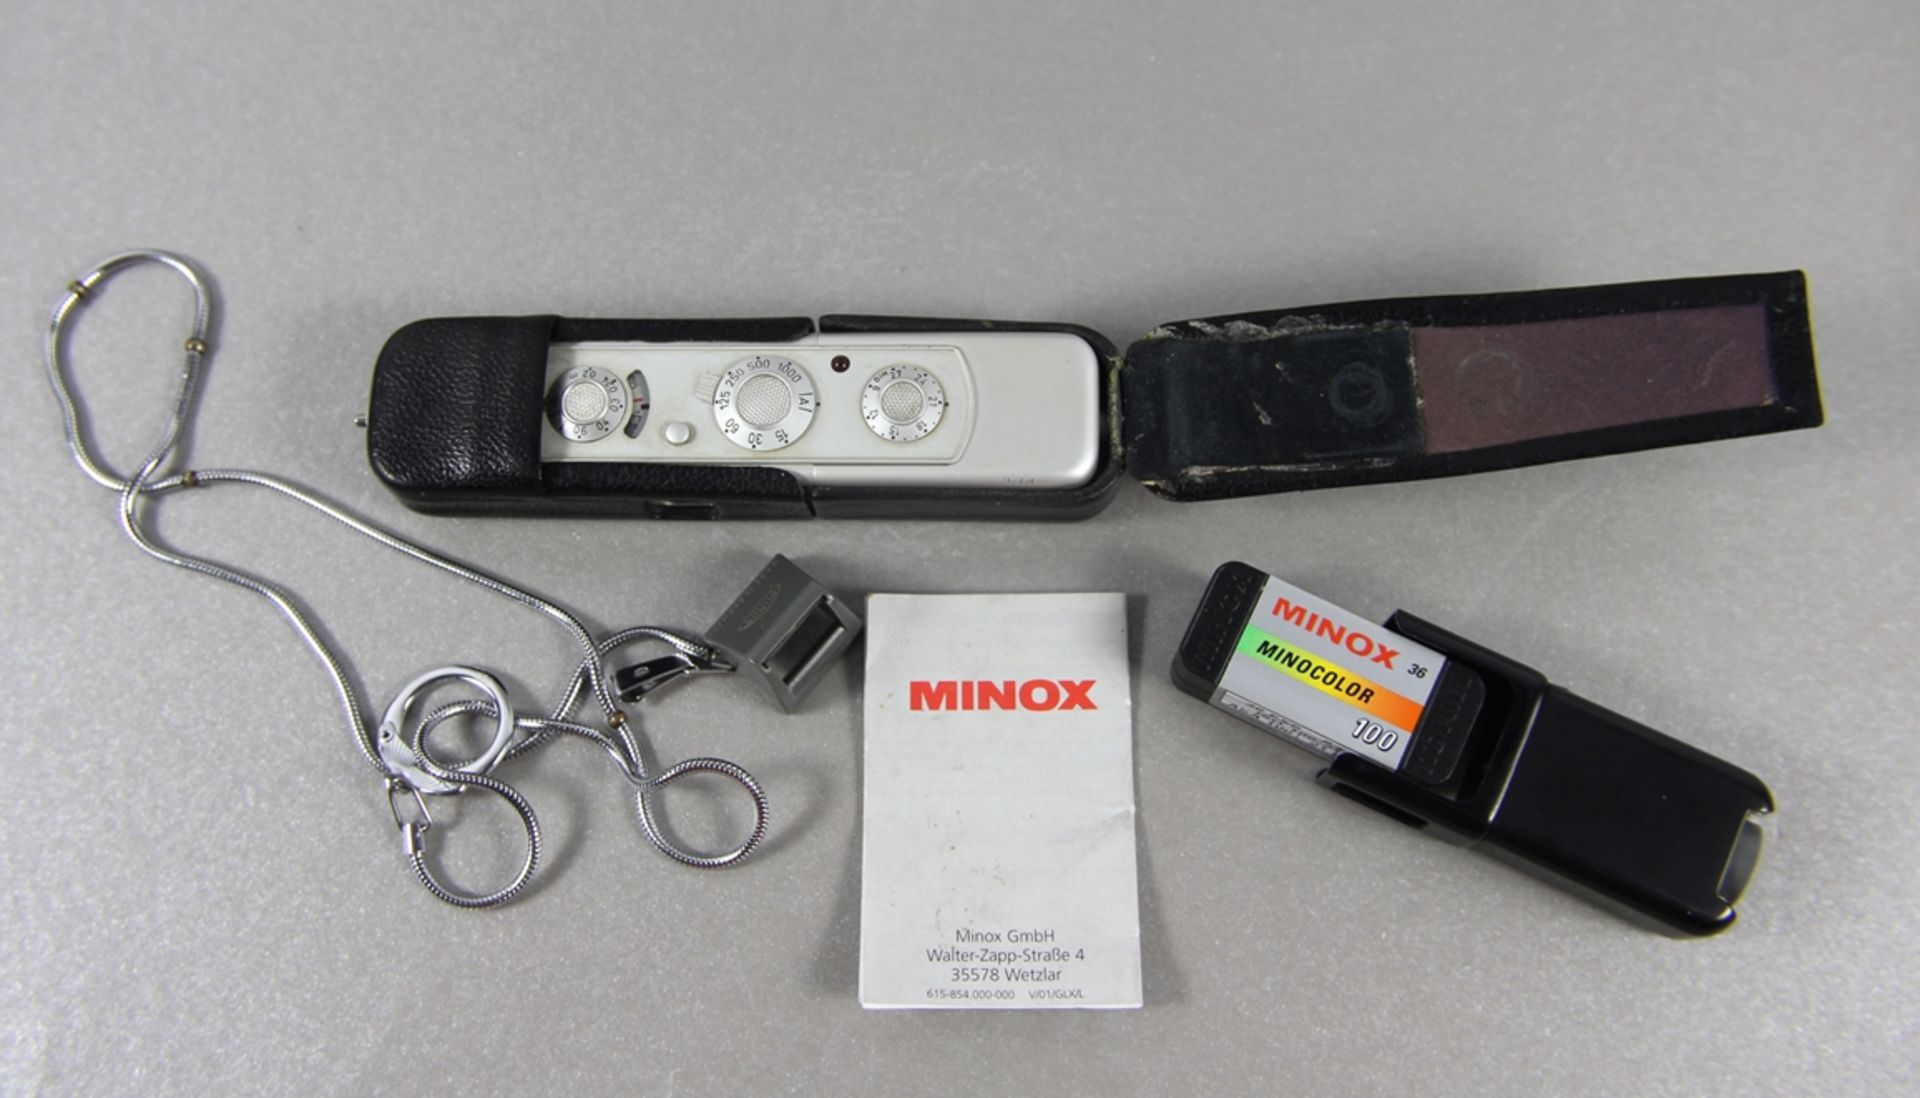 Minox-Kleinstbildkamera